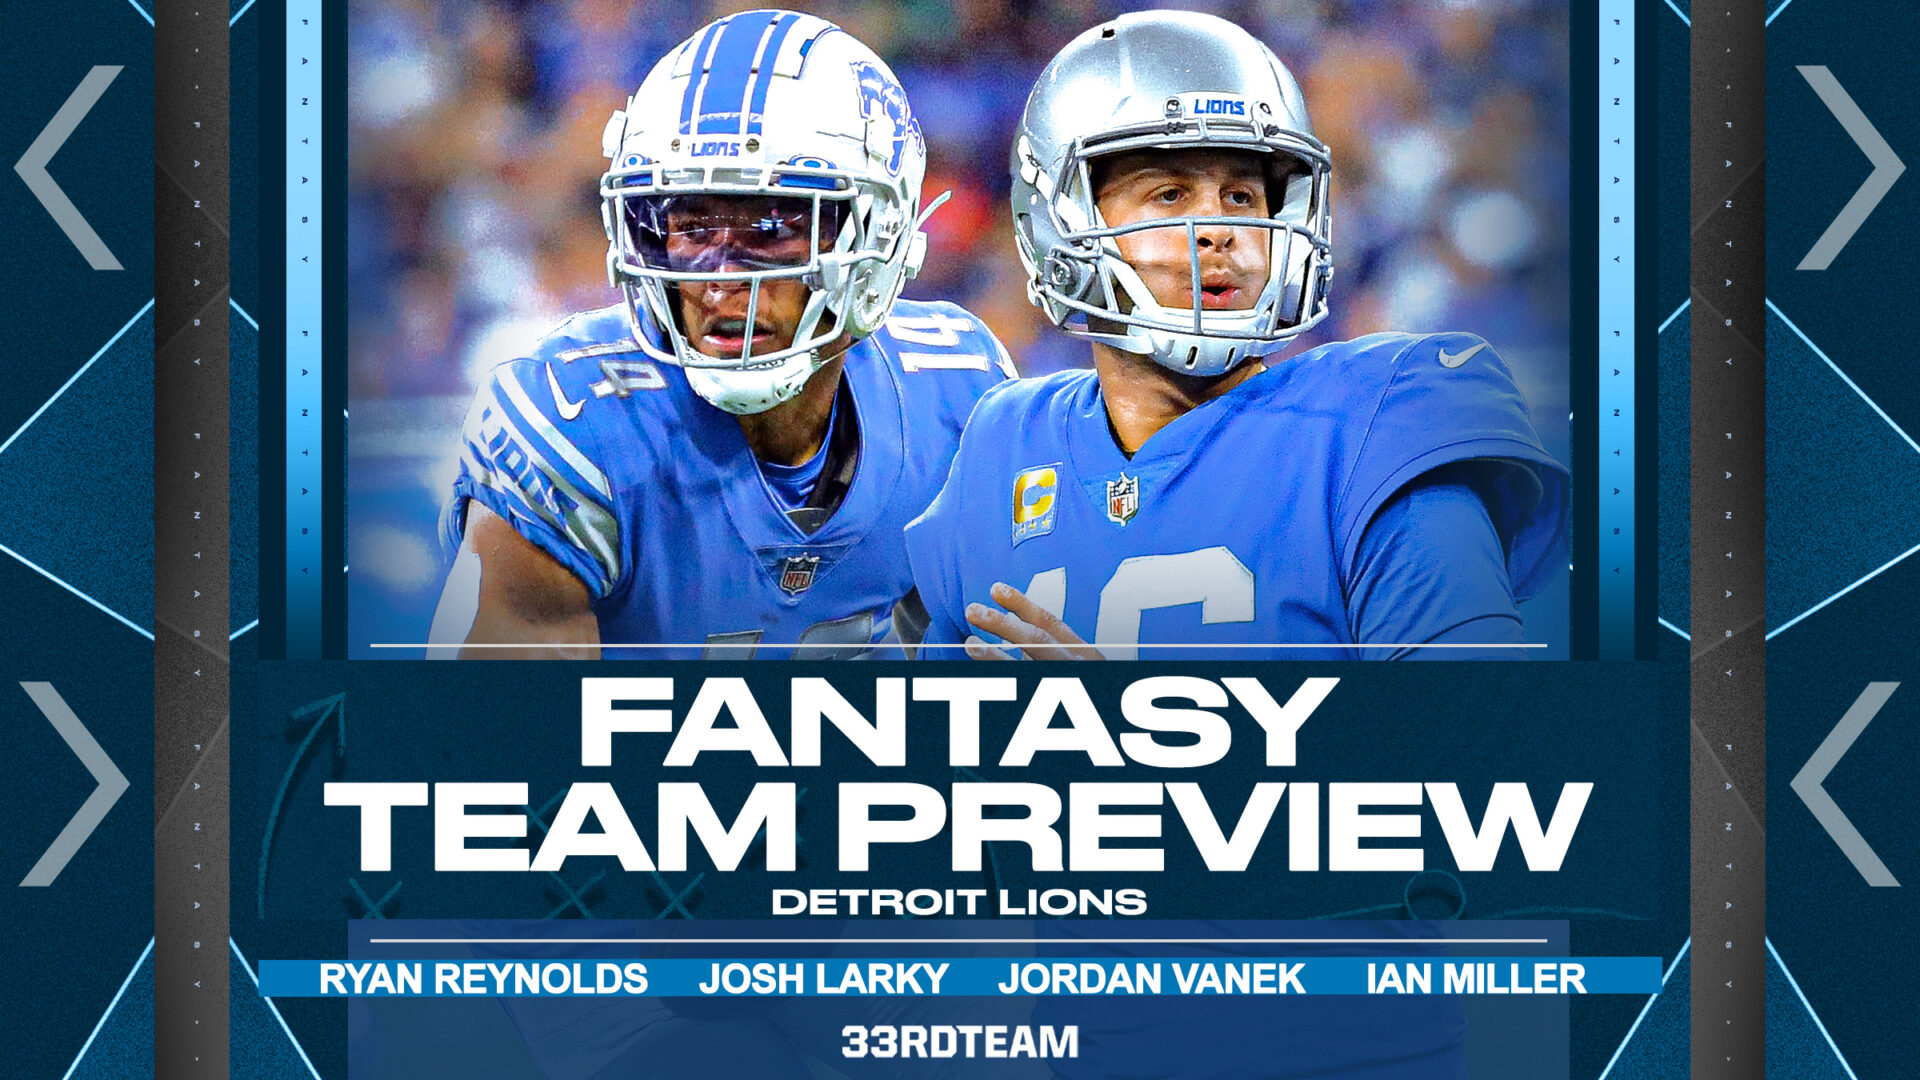 Detroit Lions fantasy team preview graphic